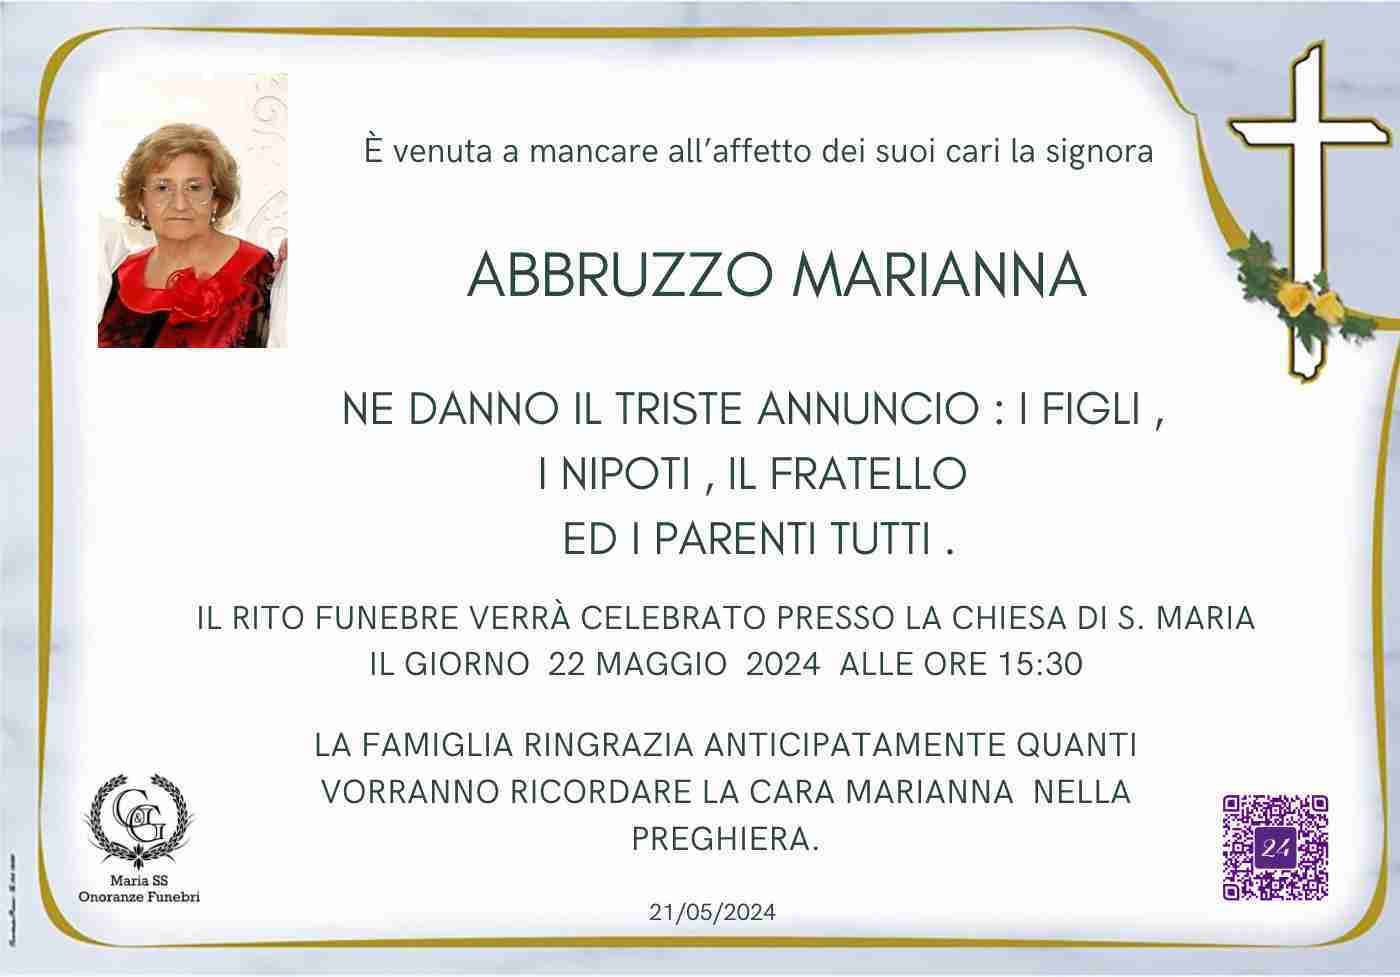 Marianna Abbruzzo